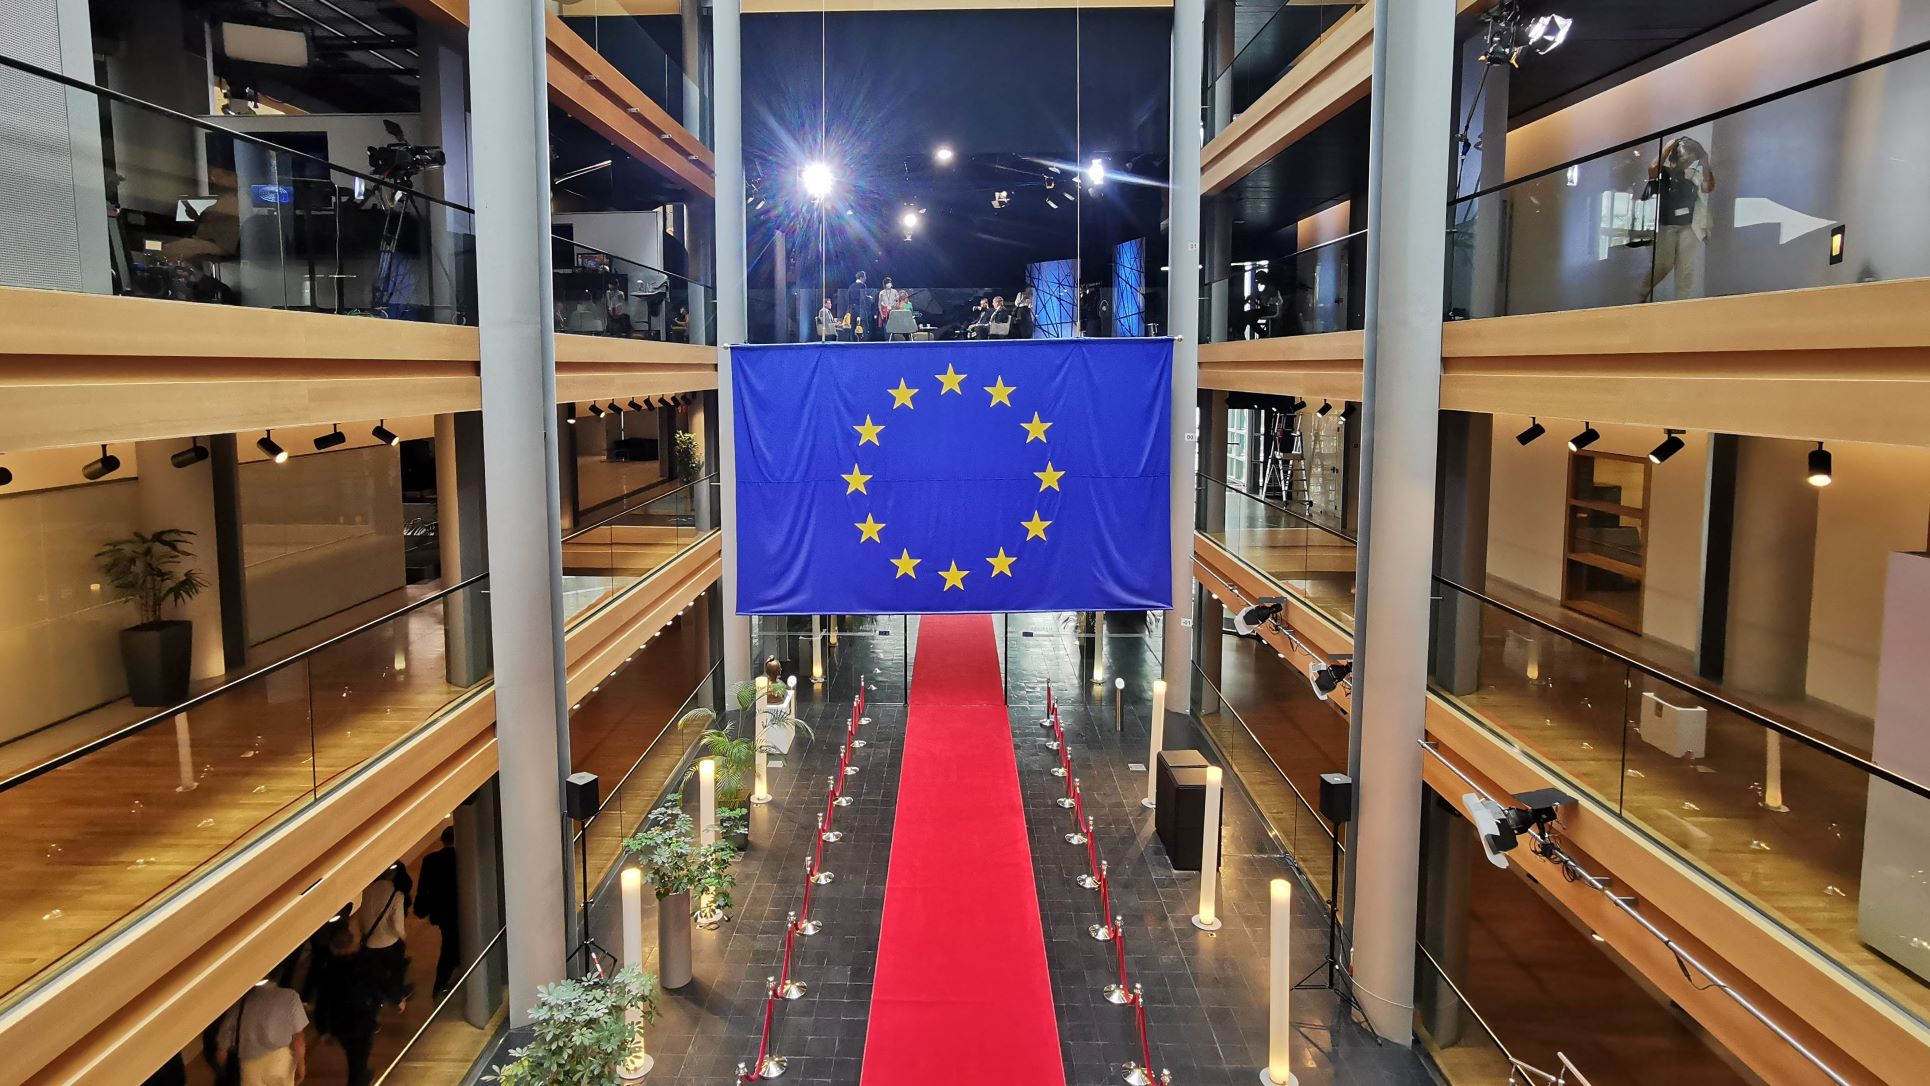 A folyosó az európai zászlóval. Sokan azt hiszik, hogy ez az Európai Unió zászlaja, de nem. Az Európa Tanácsé is például.